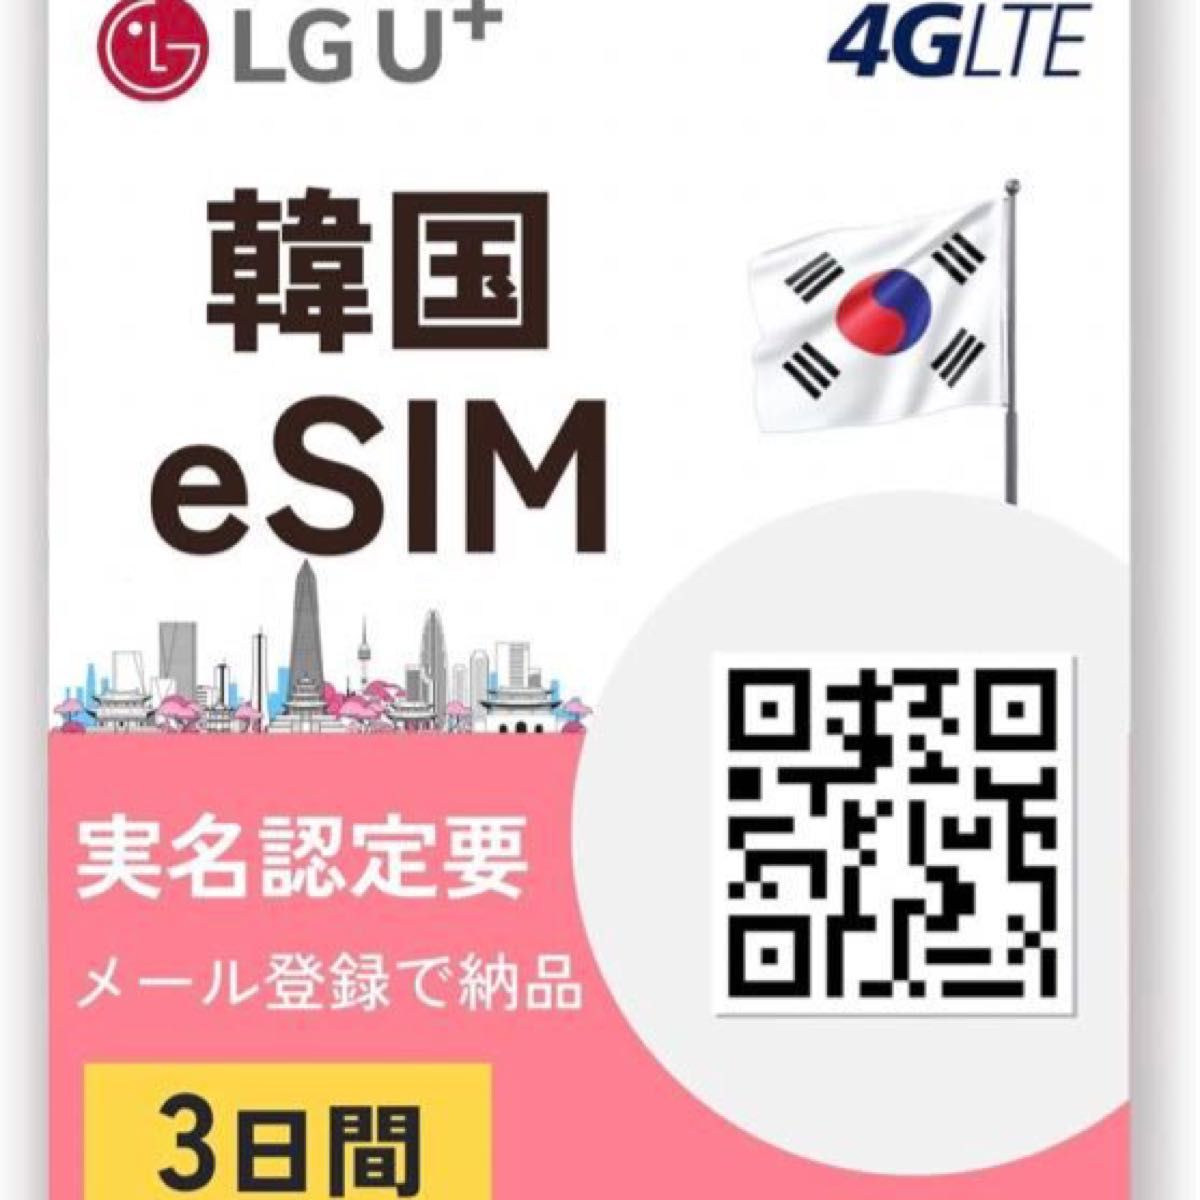 【韓国eSIM】韓国プリペイドeSIM 3日間 高速データ通信無制限使い放題 無料で通話を受ける 韓国sim LG U+回線利用 